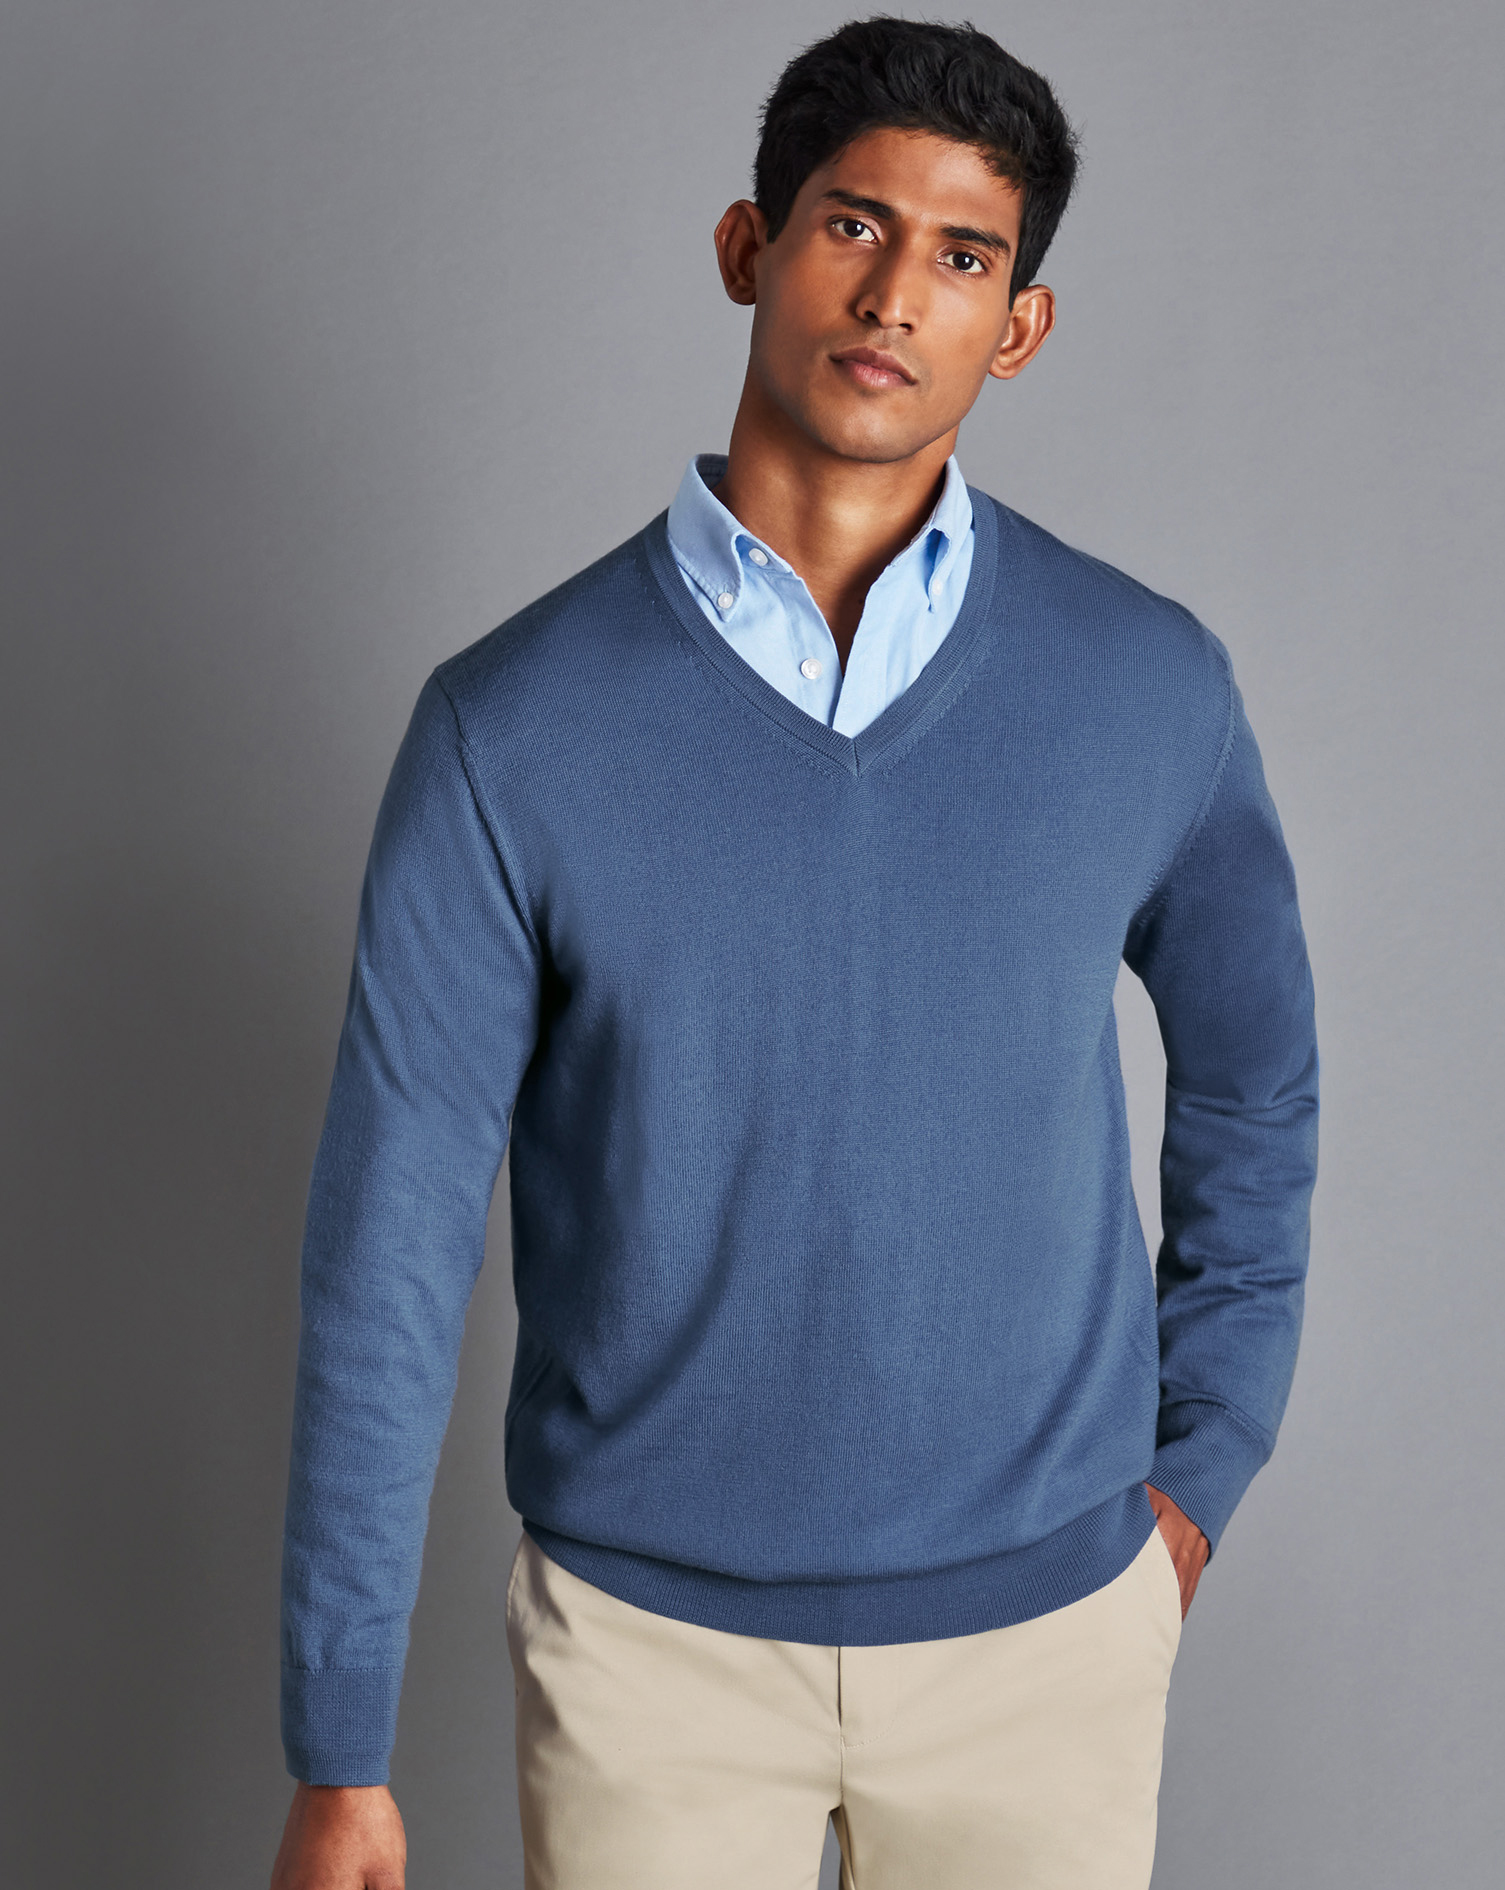 Men's Charles Tyrwhitt Merino V-Neck Sweater - Steel Blue Size Large Wool
